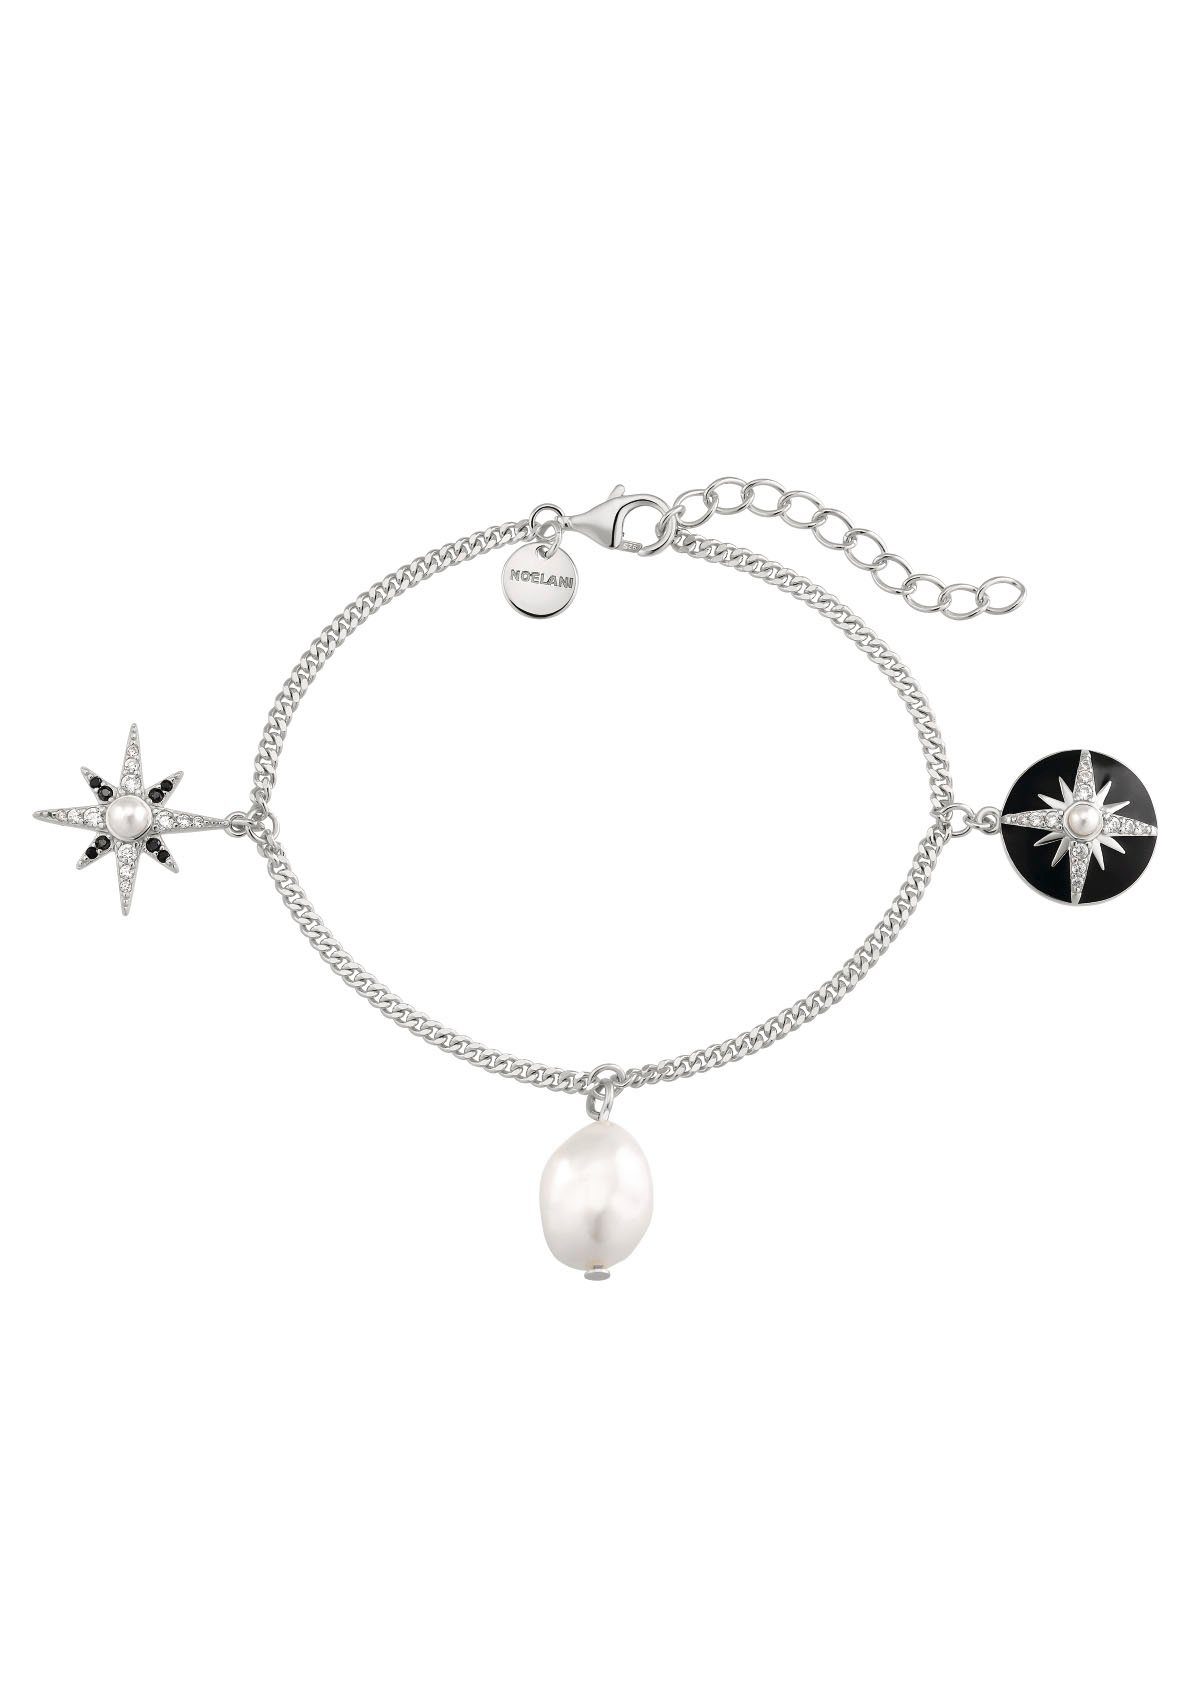 Noelani Armband Cosmic, 2034685, 2034686, mit Zirkonia, mit Muschelkernperle, Süßwasserzuchtperle silberfarben-schwarz-kristallweiß-weiß